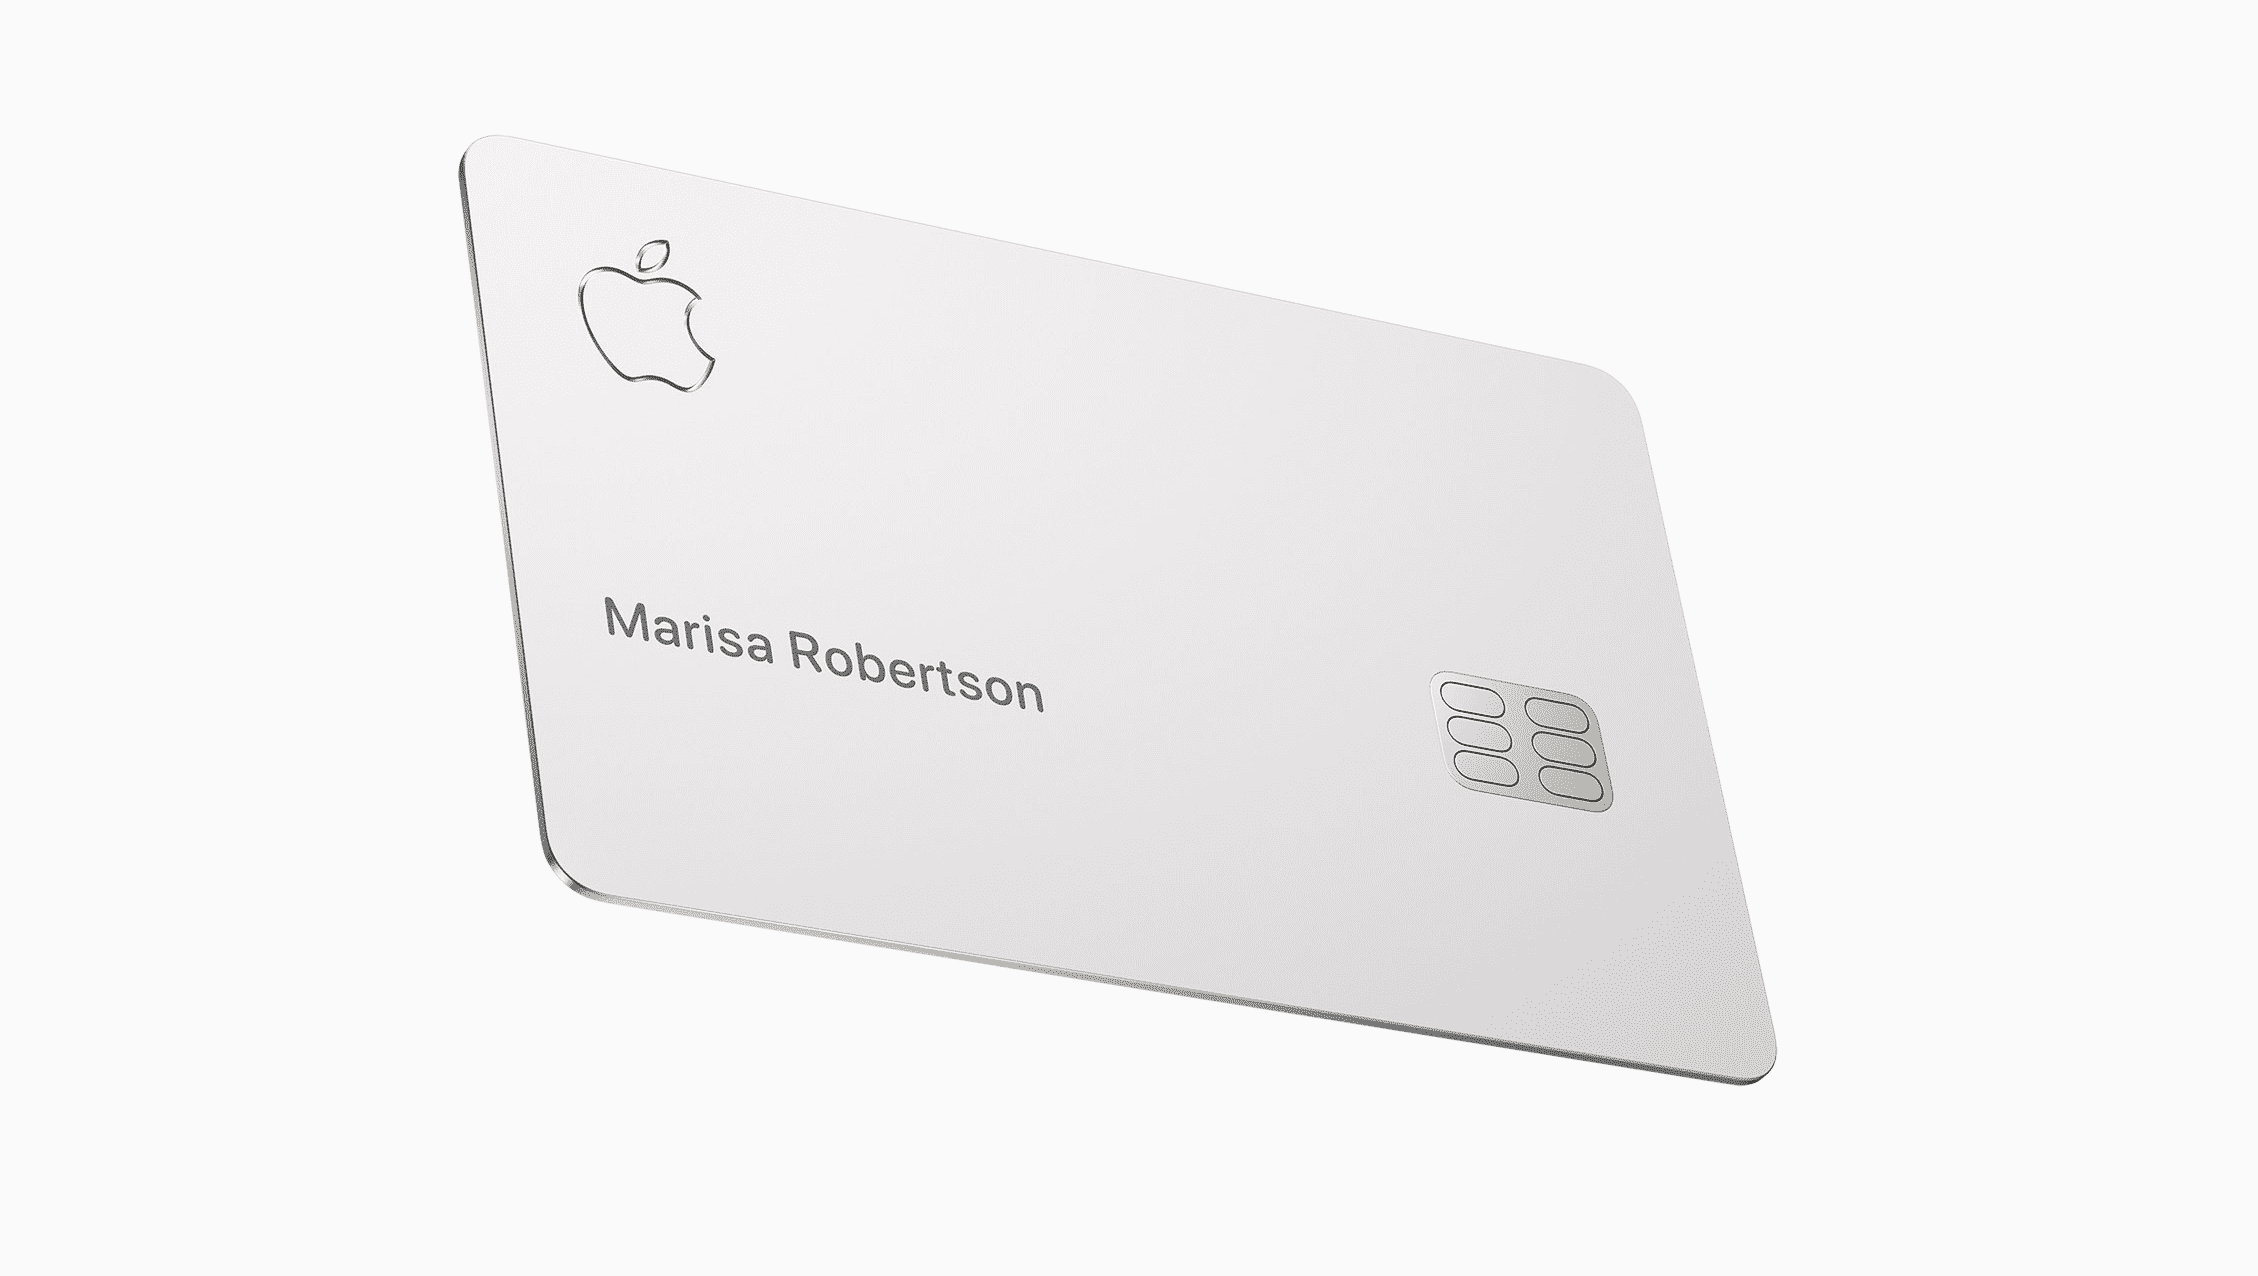 Czy Apple Card, czyli karta kredytowa od Apple obsługuje płatności zbliżeniowe? polecane, ciekawostki   Wczoraj Apple zaprezentowało nową usługę Apple Card. Dzięki niej właściciele iPhone'a będą mogli stworzyć specjalną wirtualną kartę za pomocą aplikacji Portfel, a także otrzymać fizyczną kartę wykonaną z tytanu. KartaApple 1